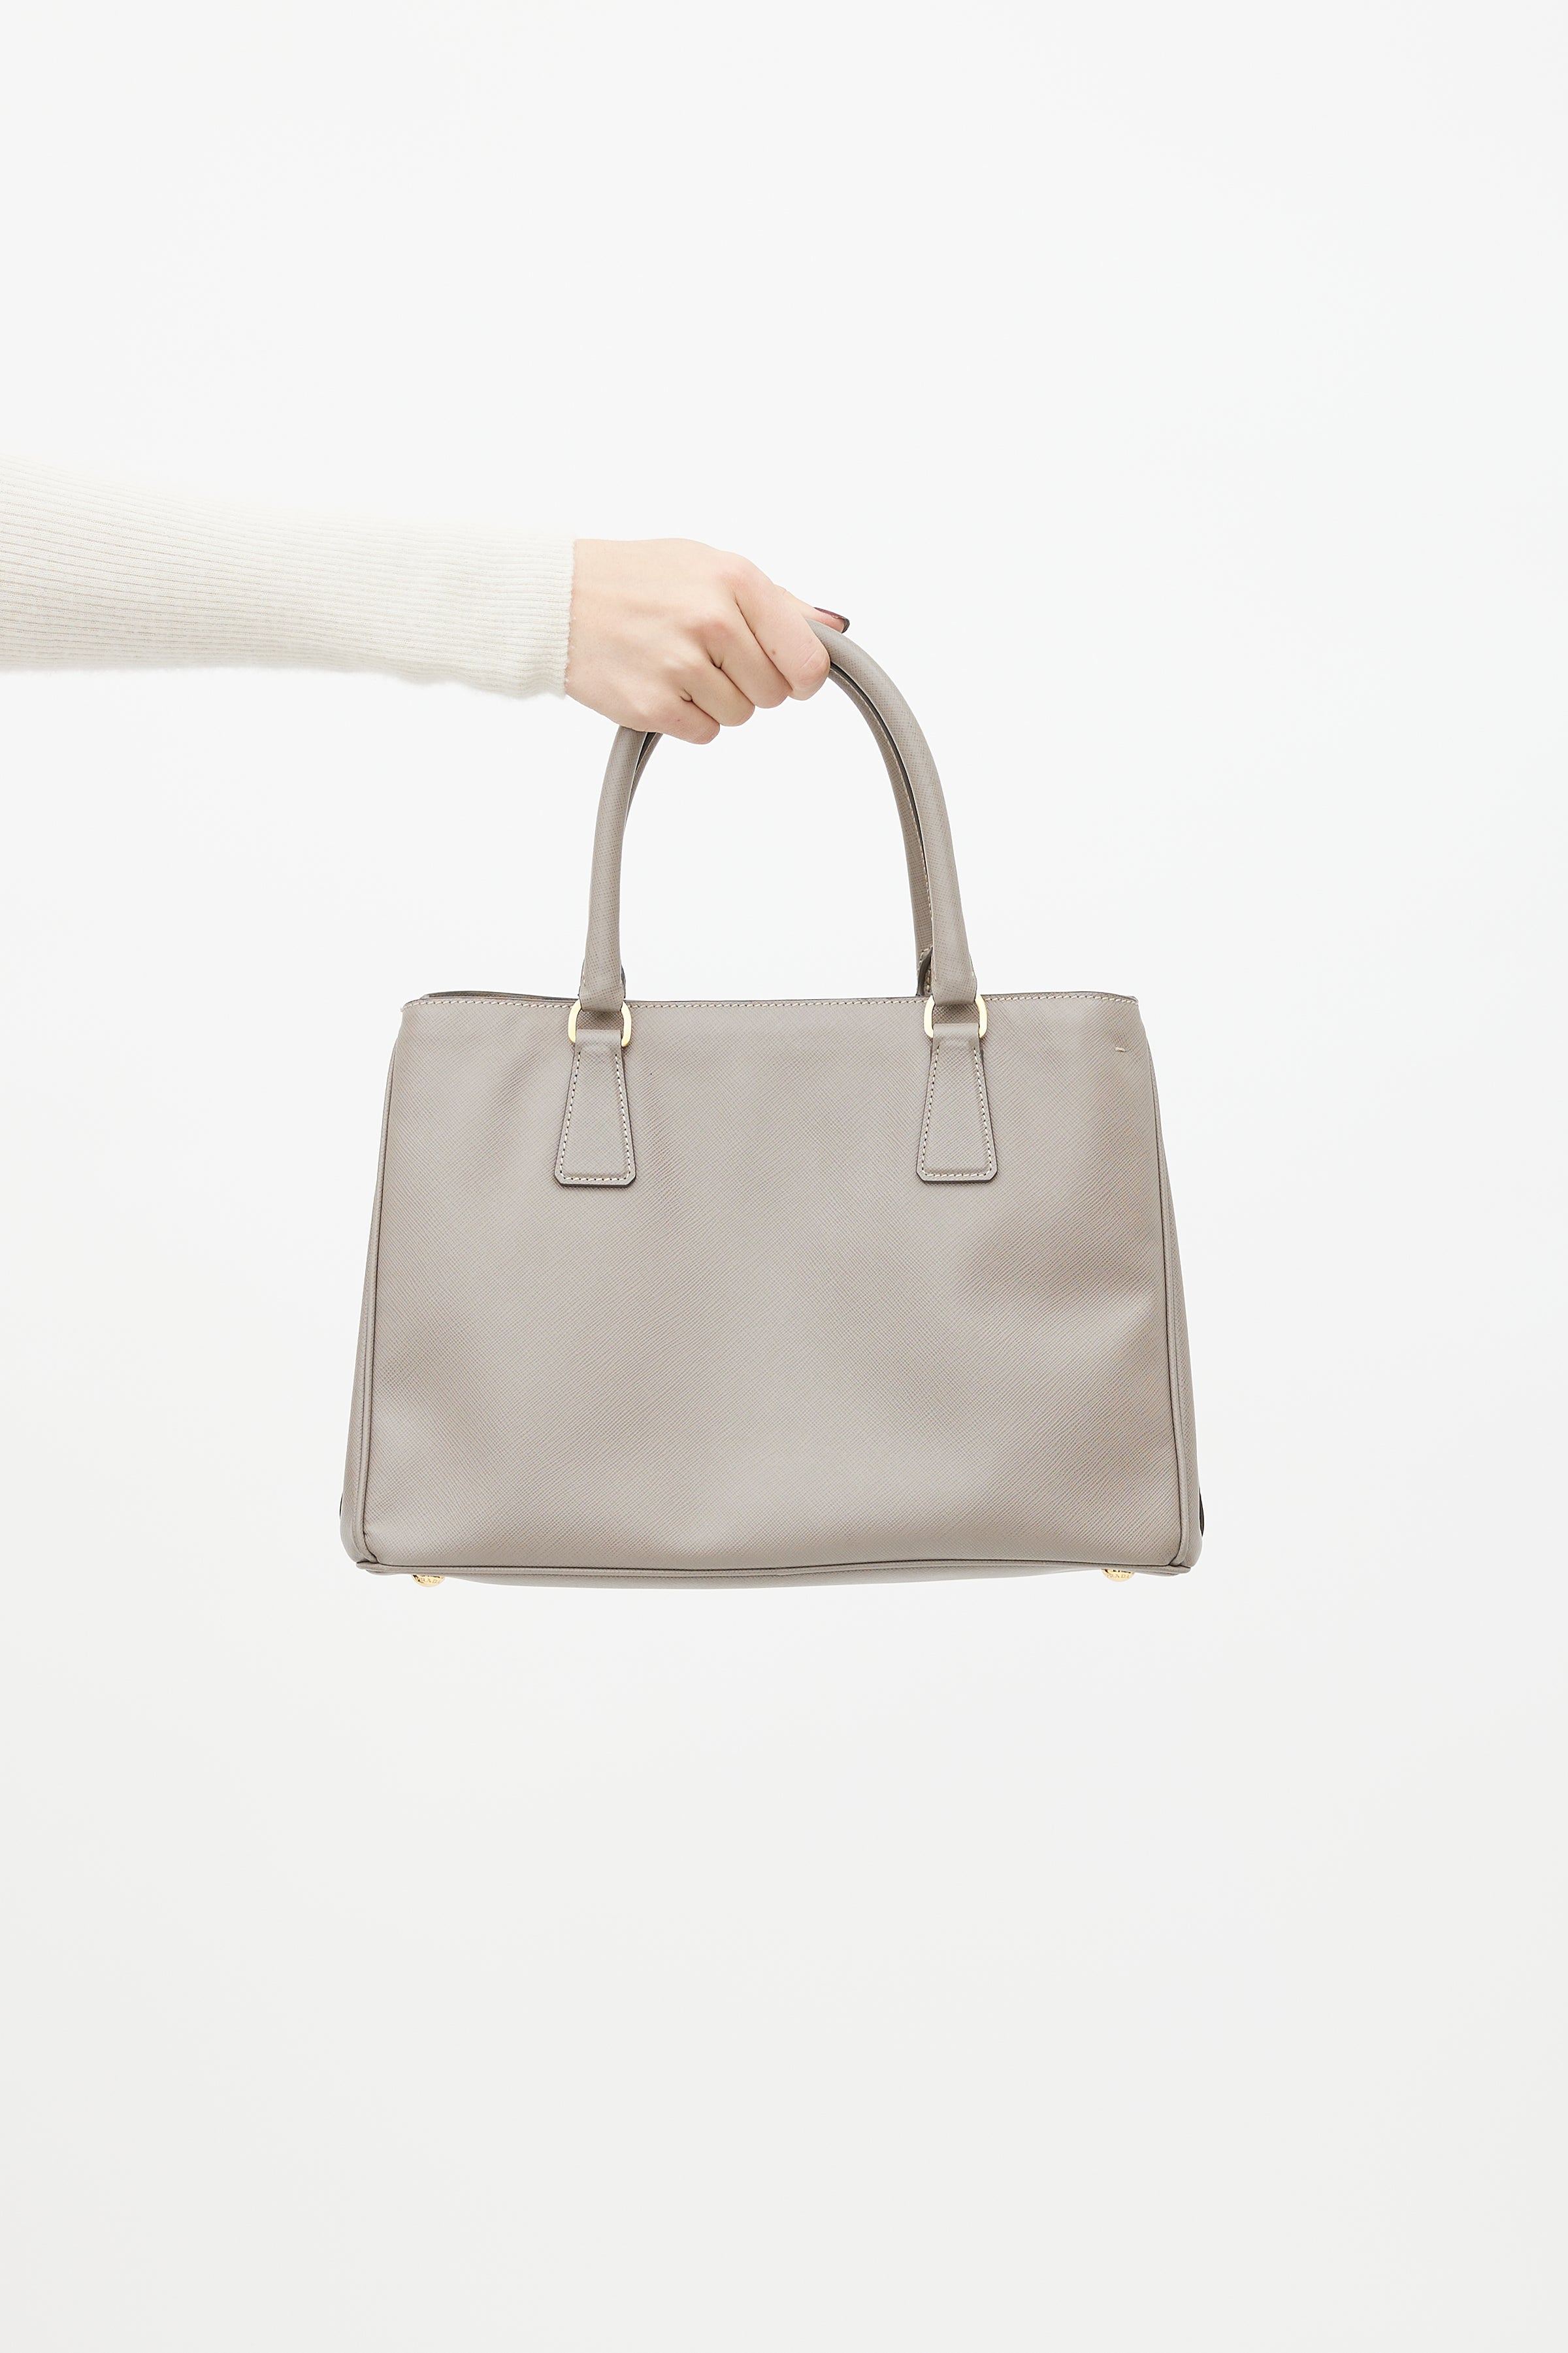 Prada Galleria Saffiano Leather Double Zip Bag, Small, Gray